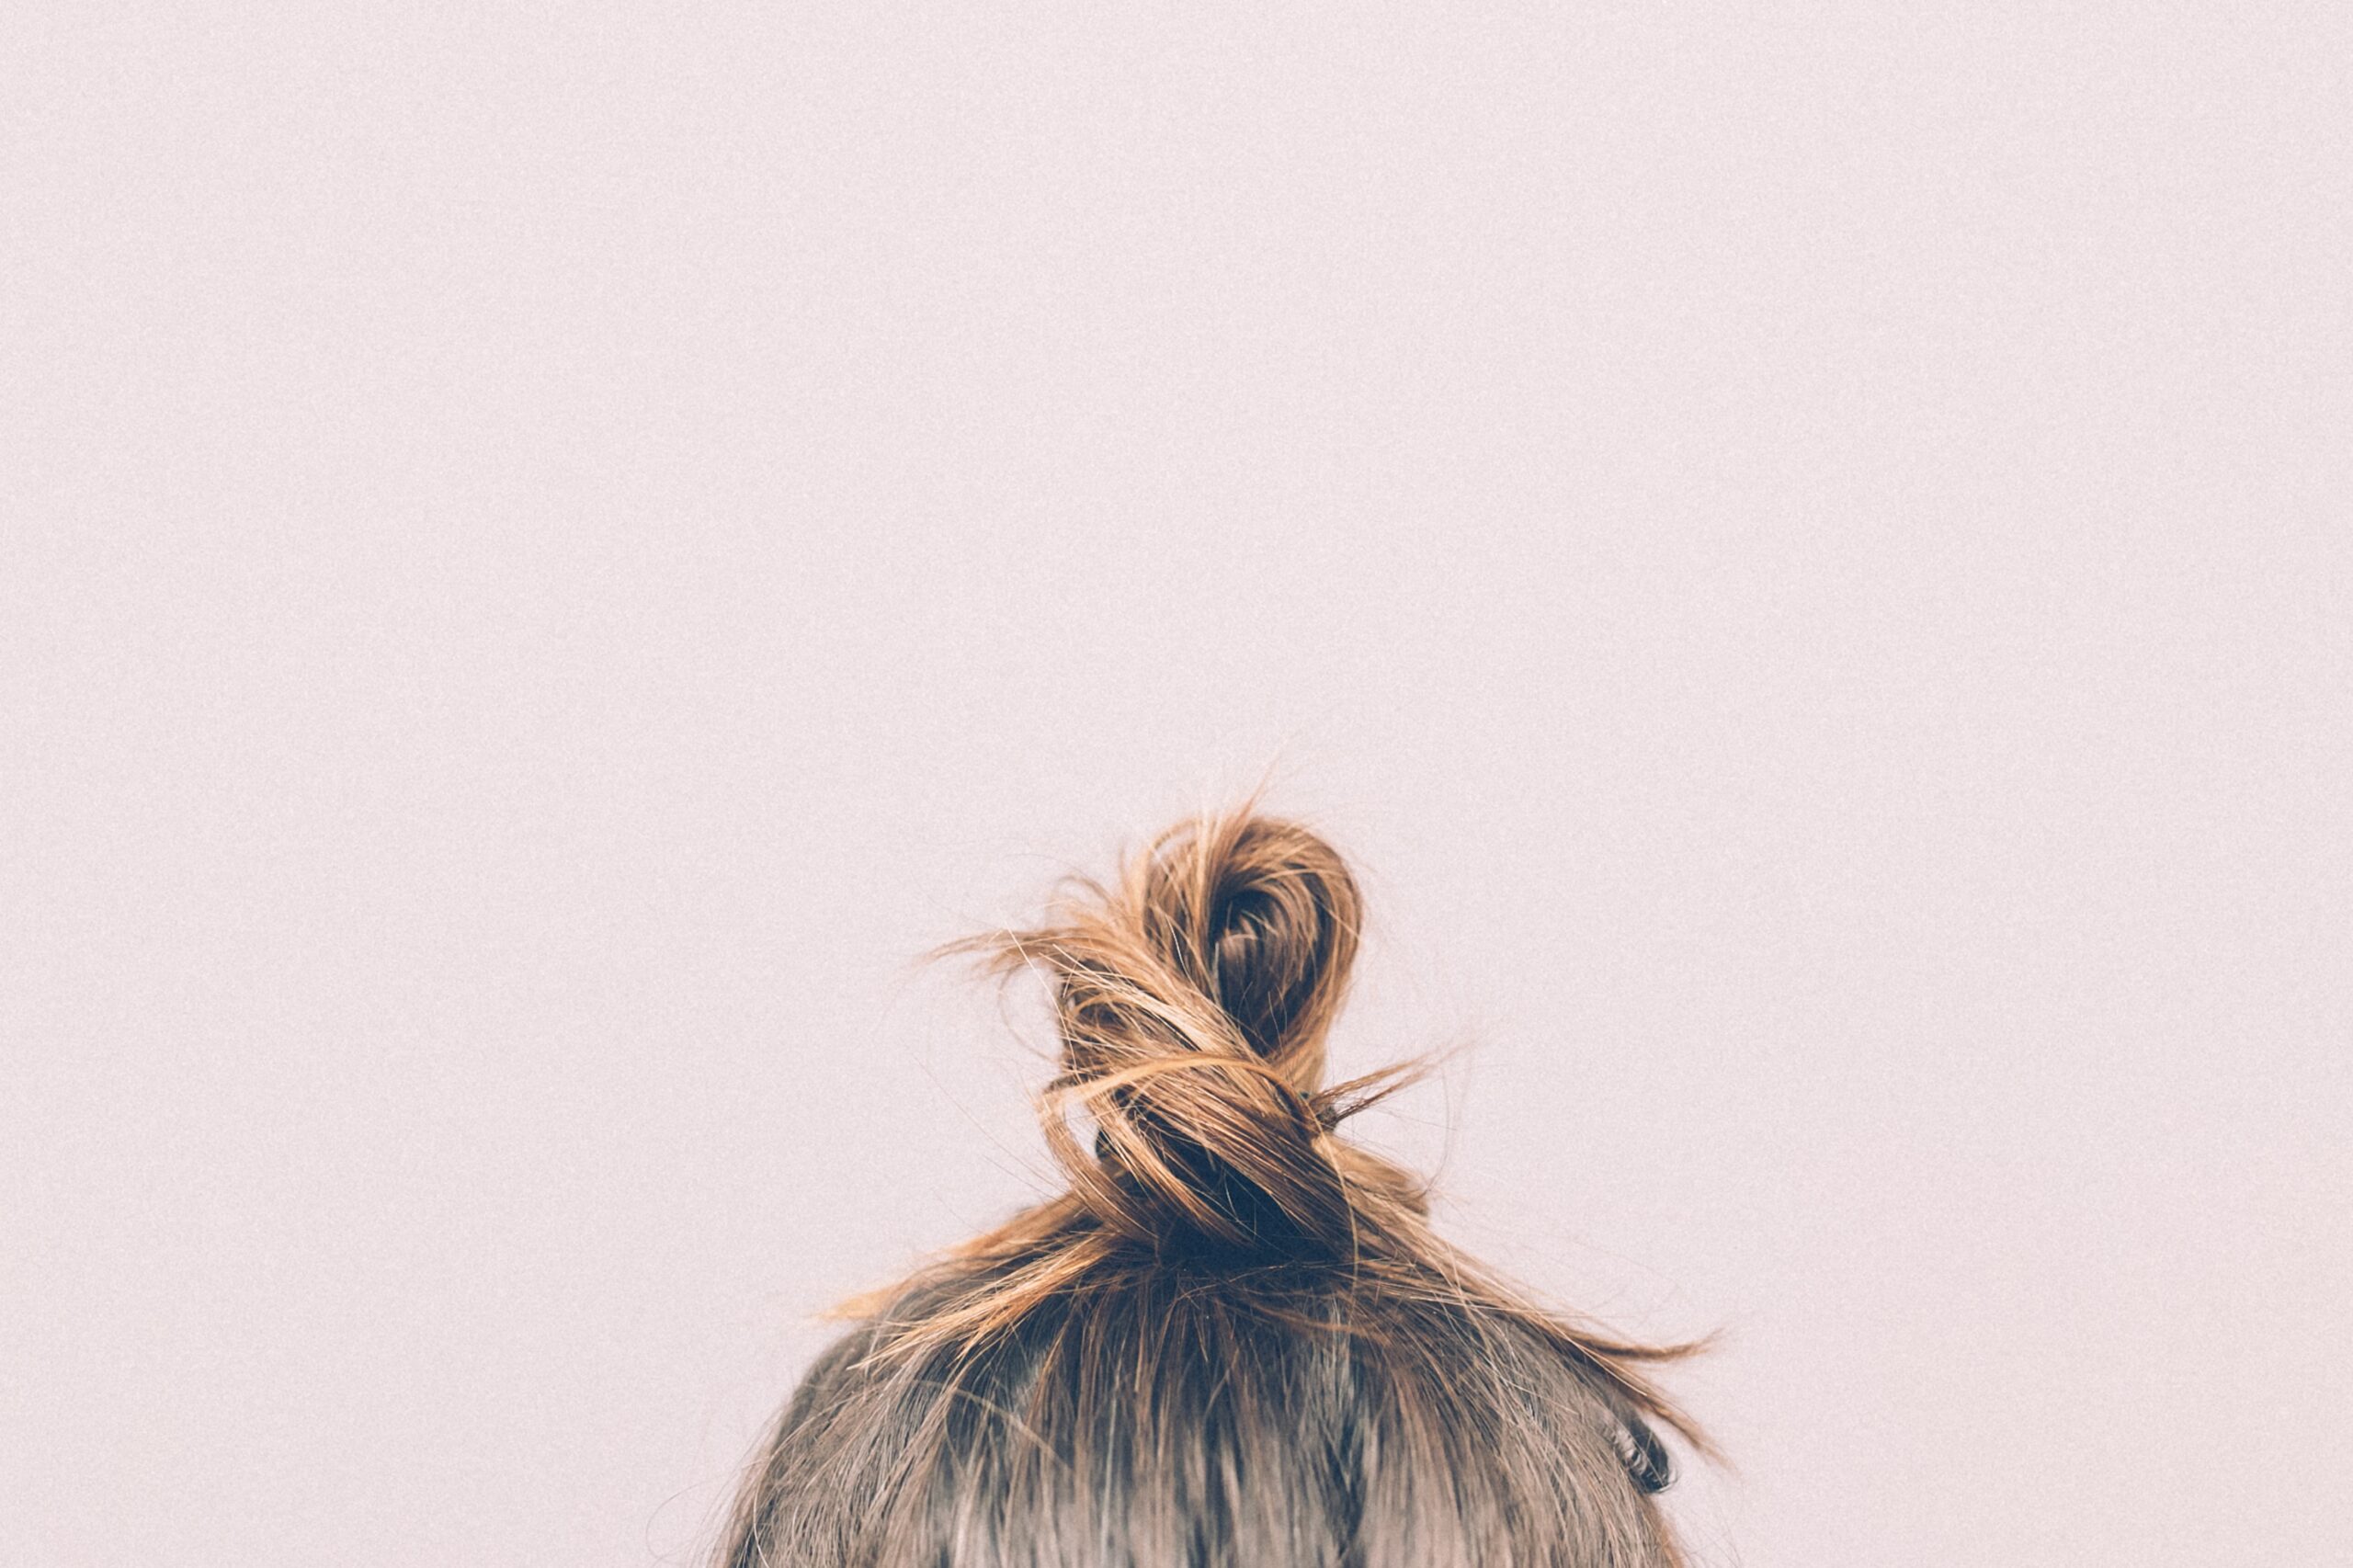 Woman's hair in a bun